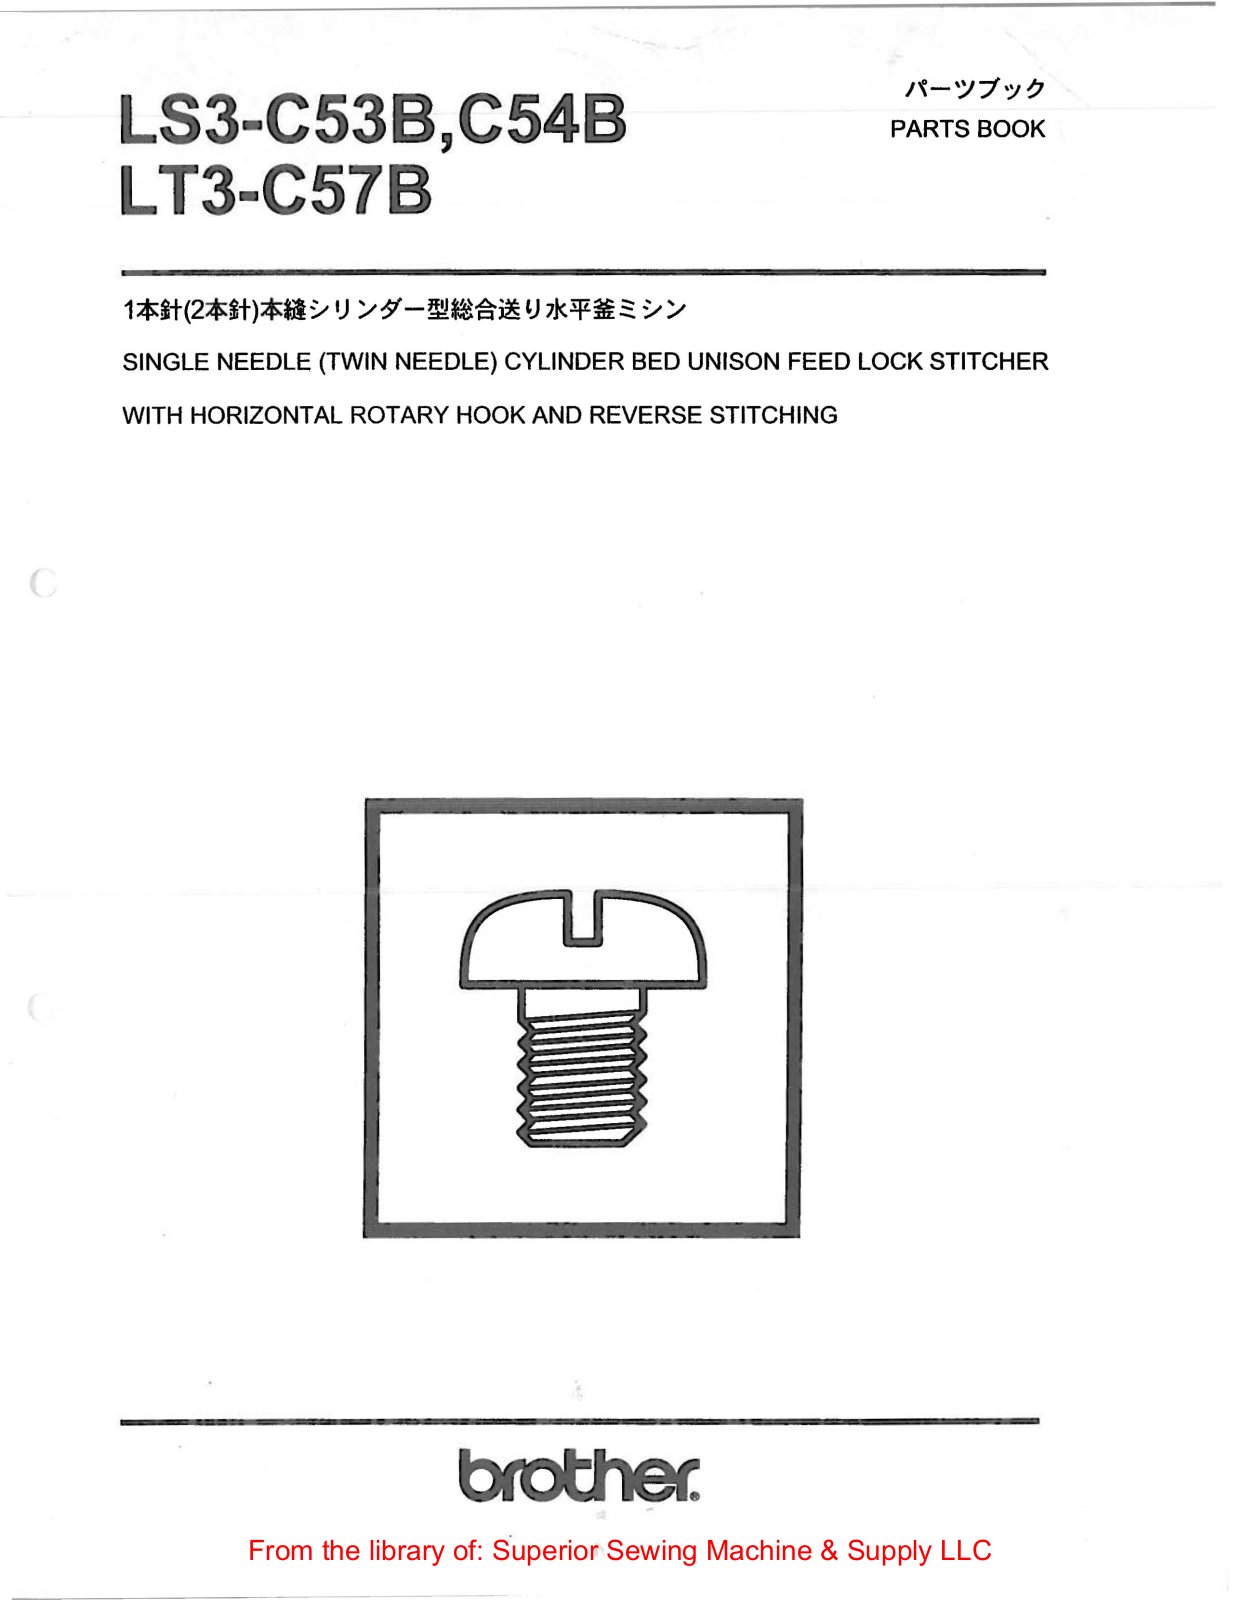 Brother LS3-C53B, LS3-C54B, LT3-C57B Manual